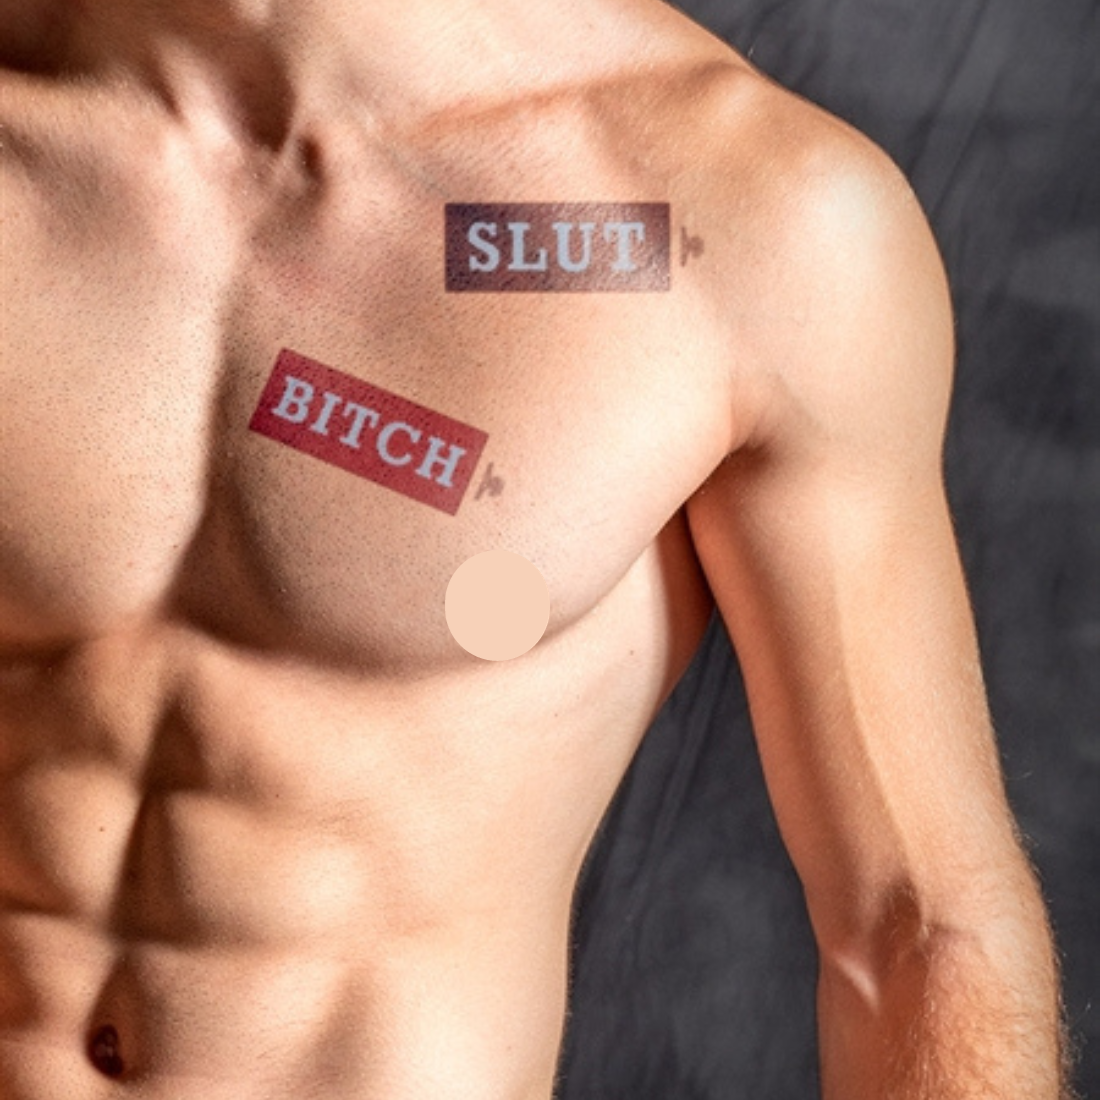 Slut Bitch, tijdelijke tattoo. Ontworpen door Mister B, perfecte accessoire voor festival of pride. Verkrijgbaar bij Flavourez